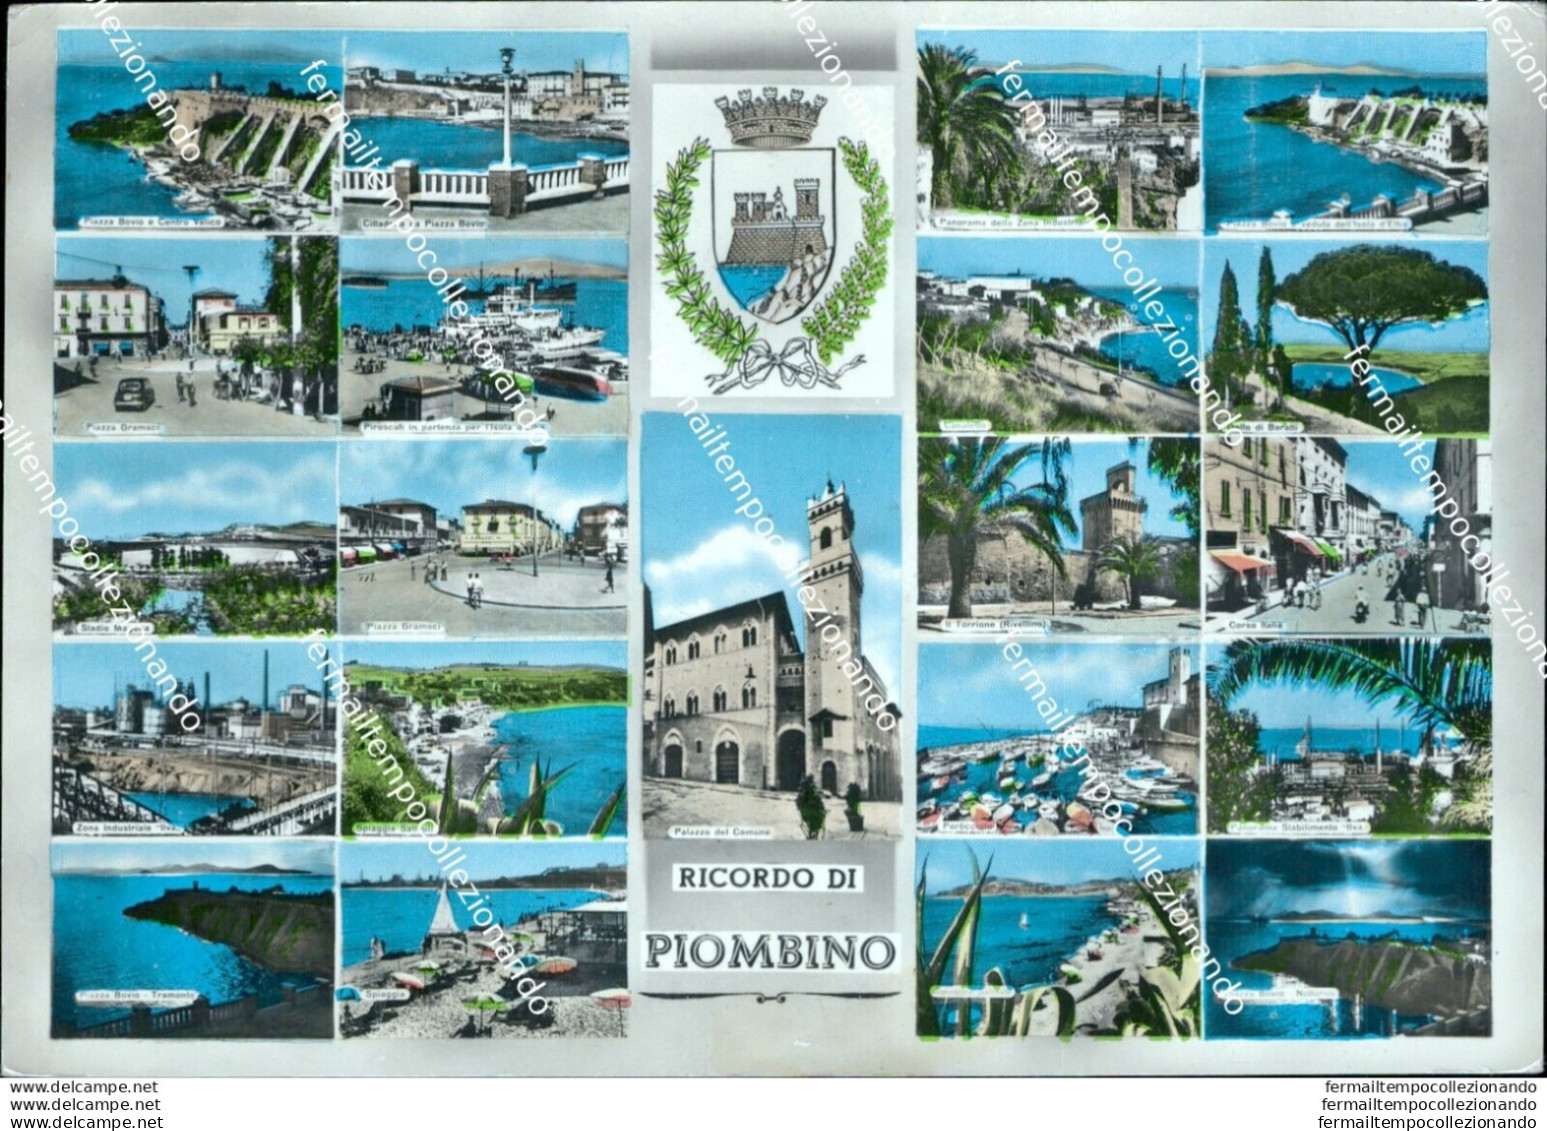 Br172 Cartolina Ricordo Di Piomnbino Multivedute Provincia Di Livorno Toscana - Livorno